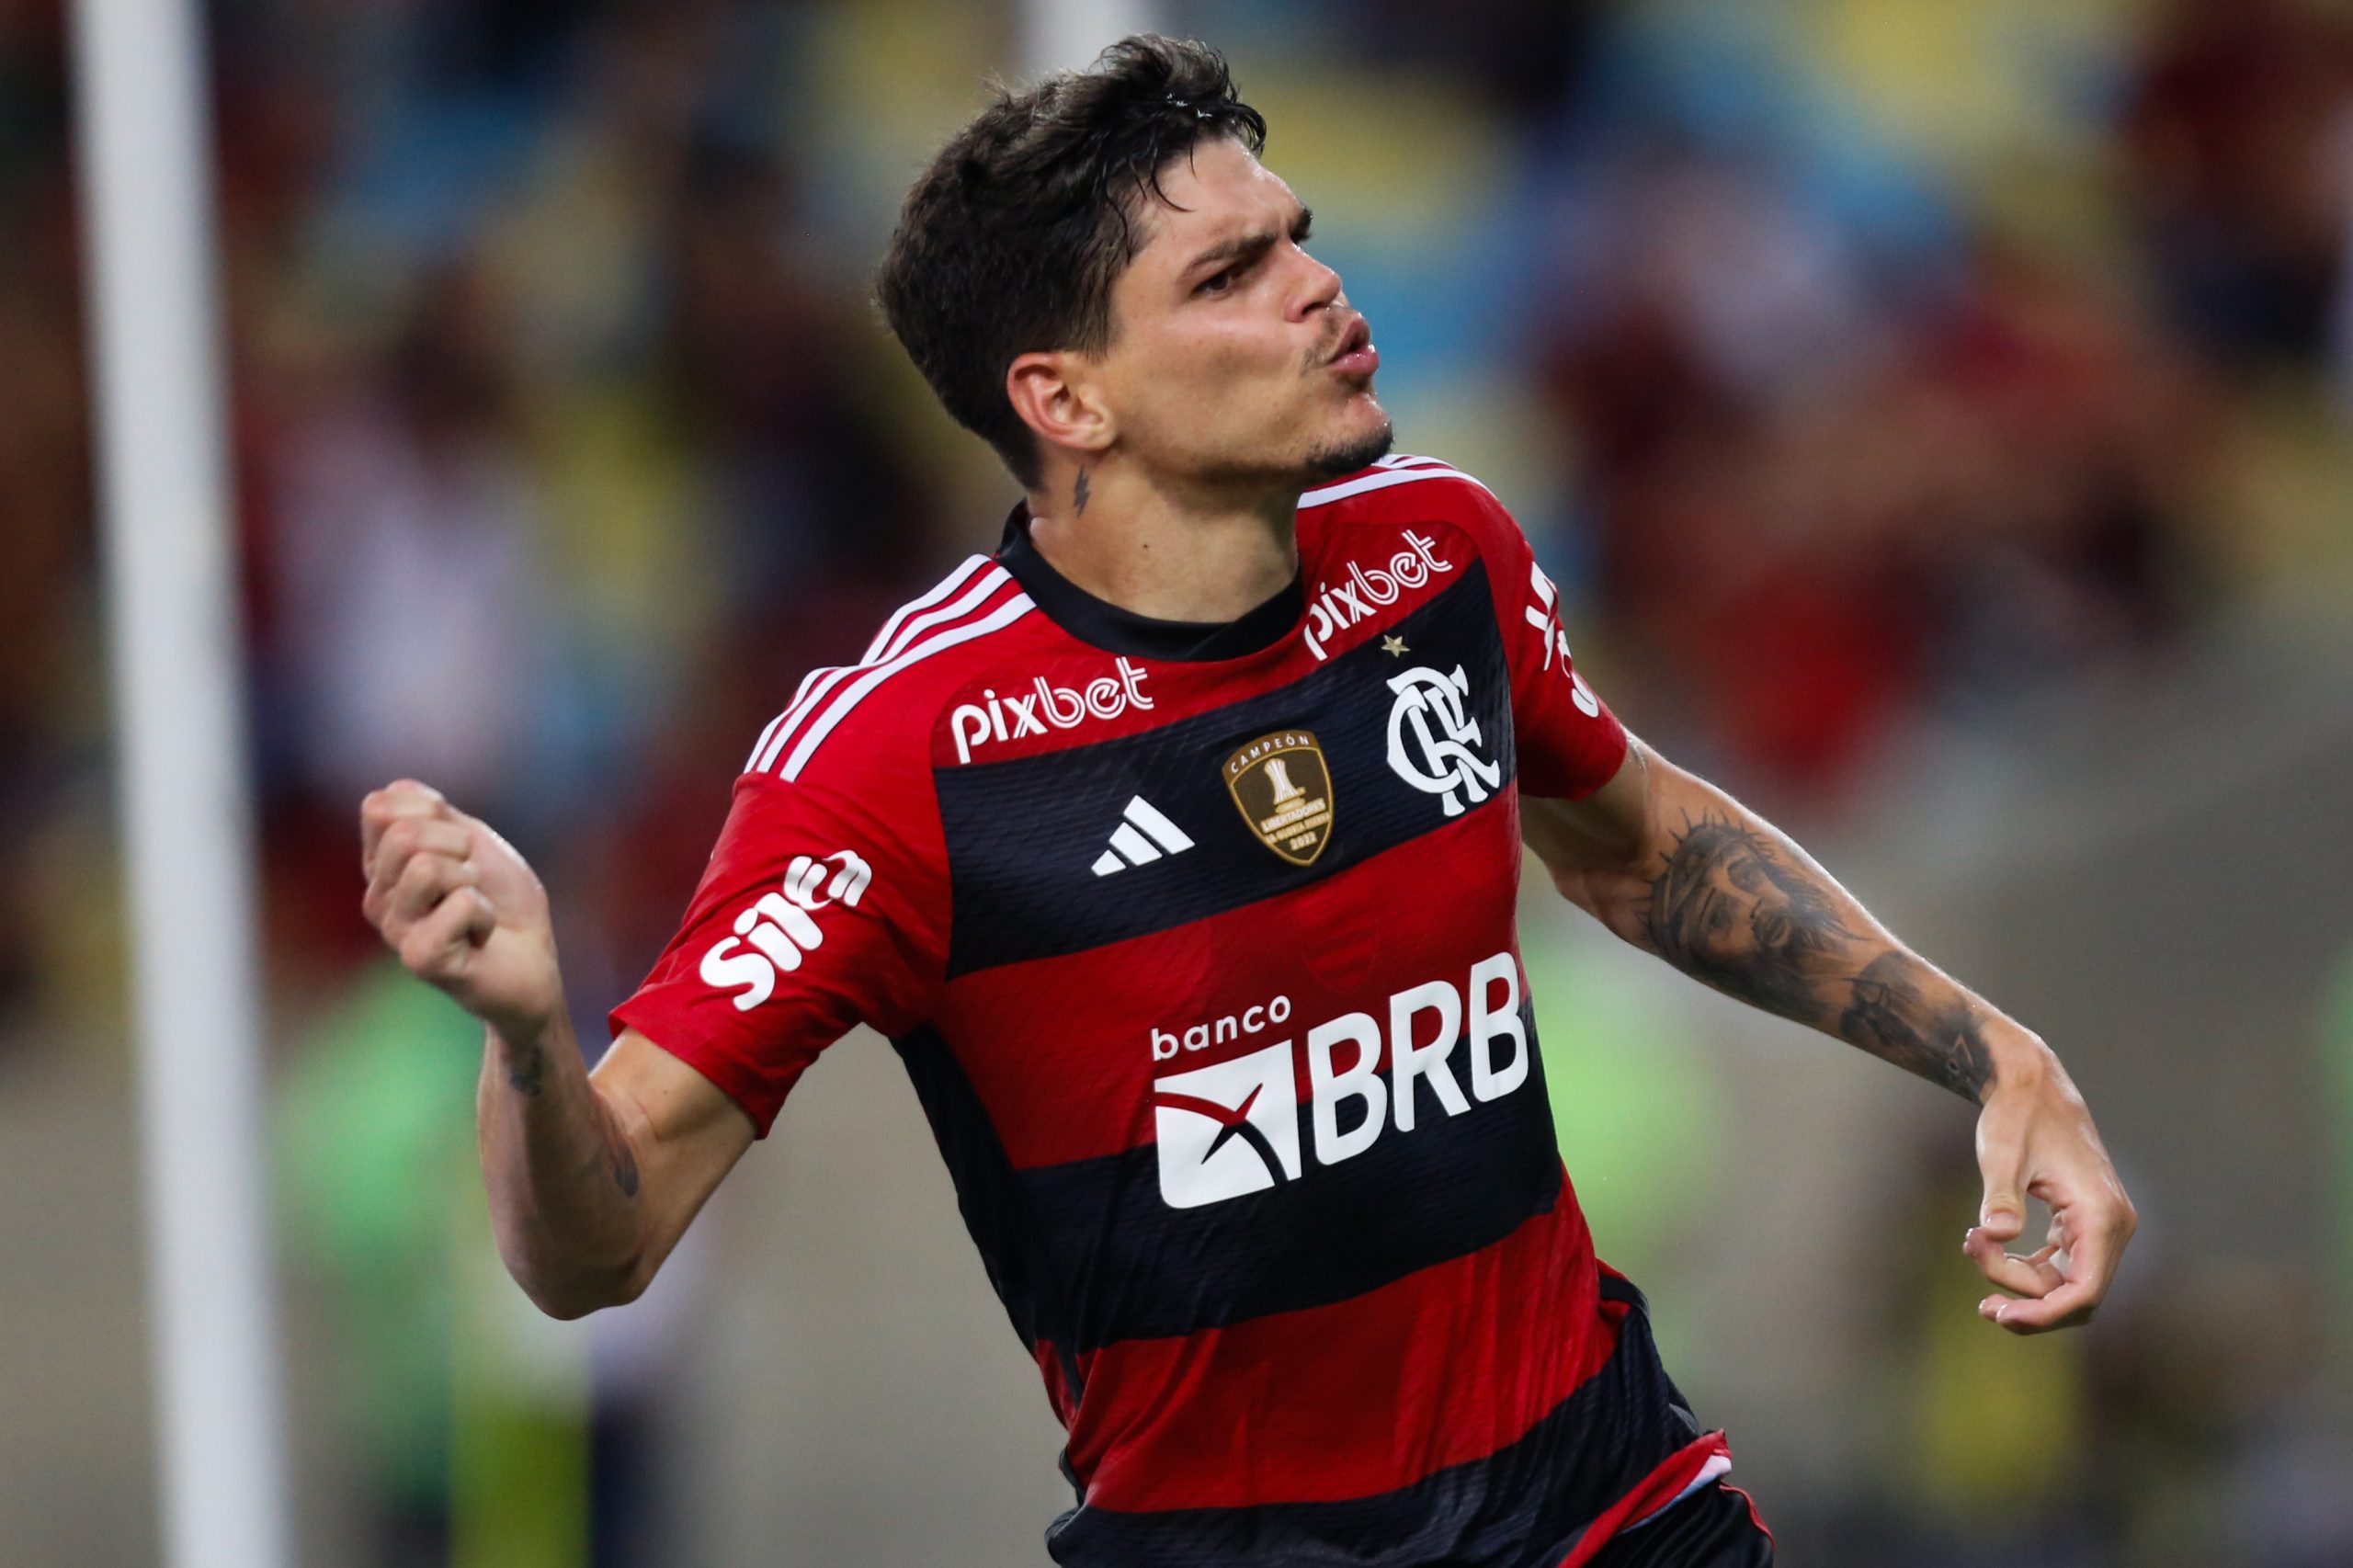 ‘Darei meu melhor’, diz Ayrton Lucas, do Flamengo, após primeira convocação para a Seleção Brasileira